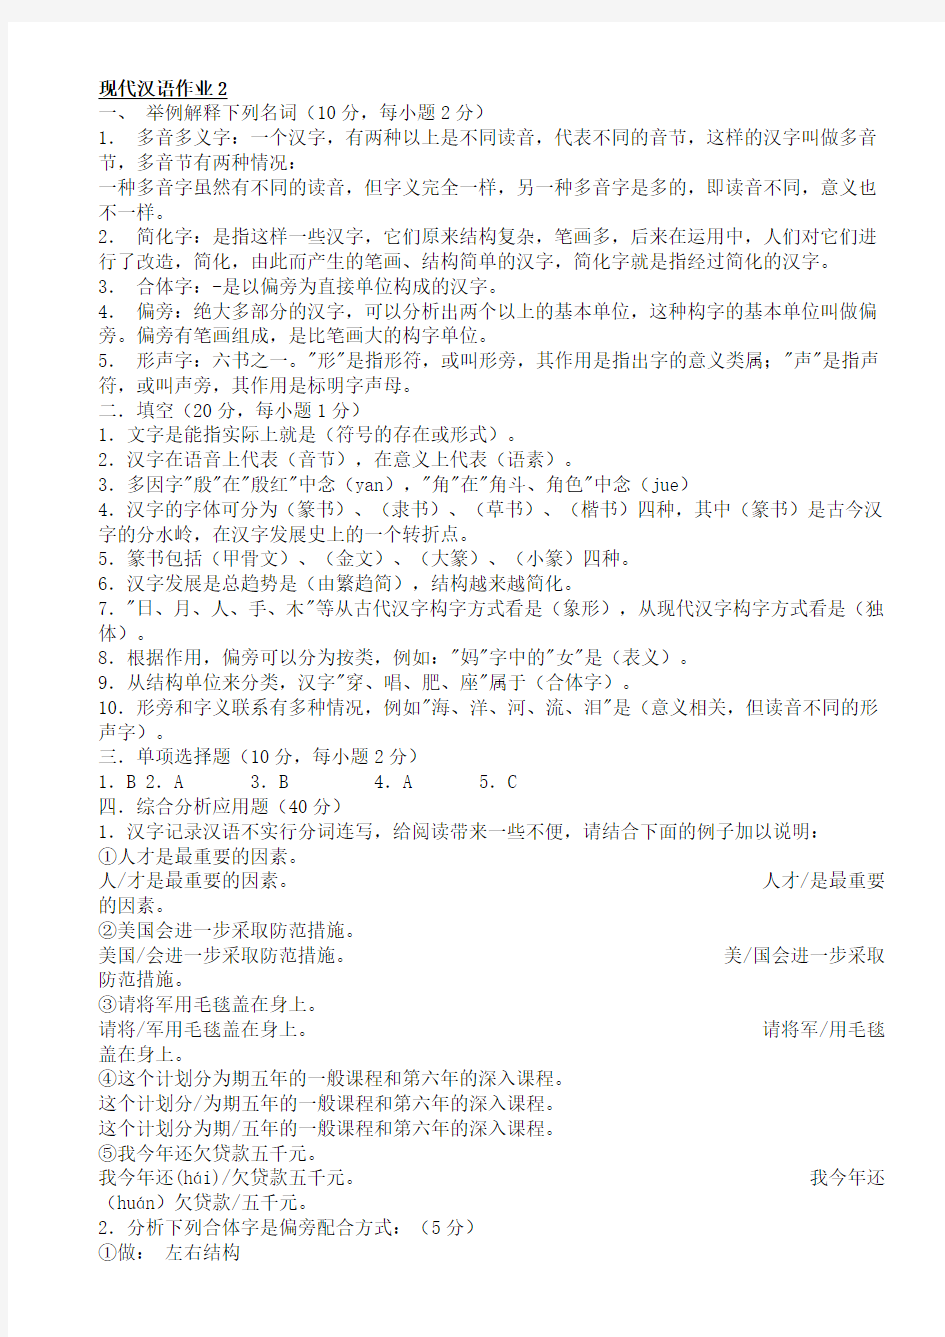 现代汉语作业2形成性考核册答案